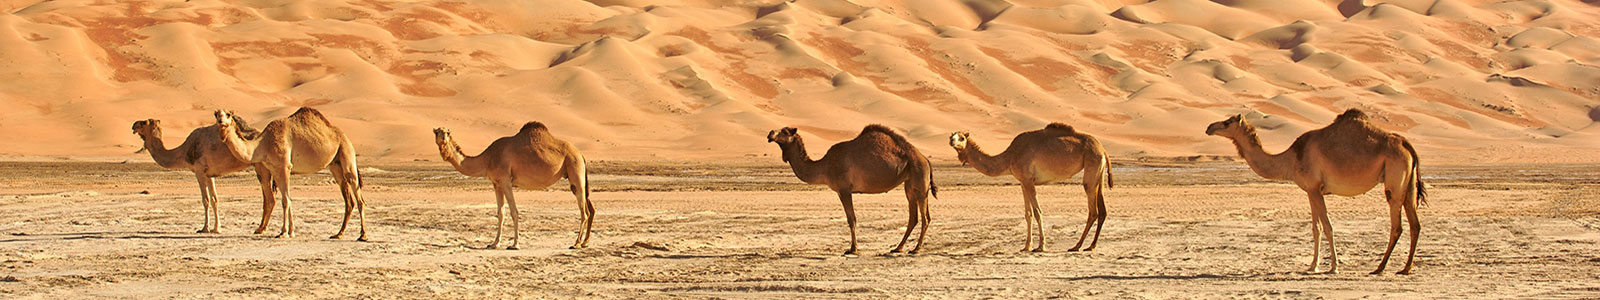 №858 - Верблюды в пустыне